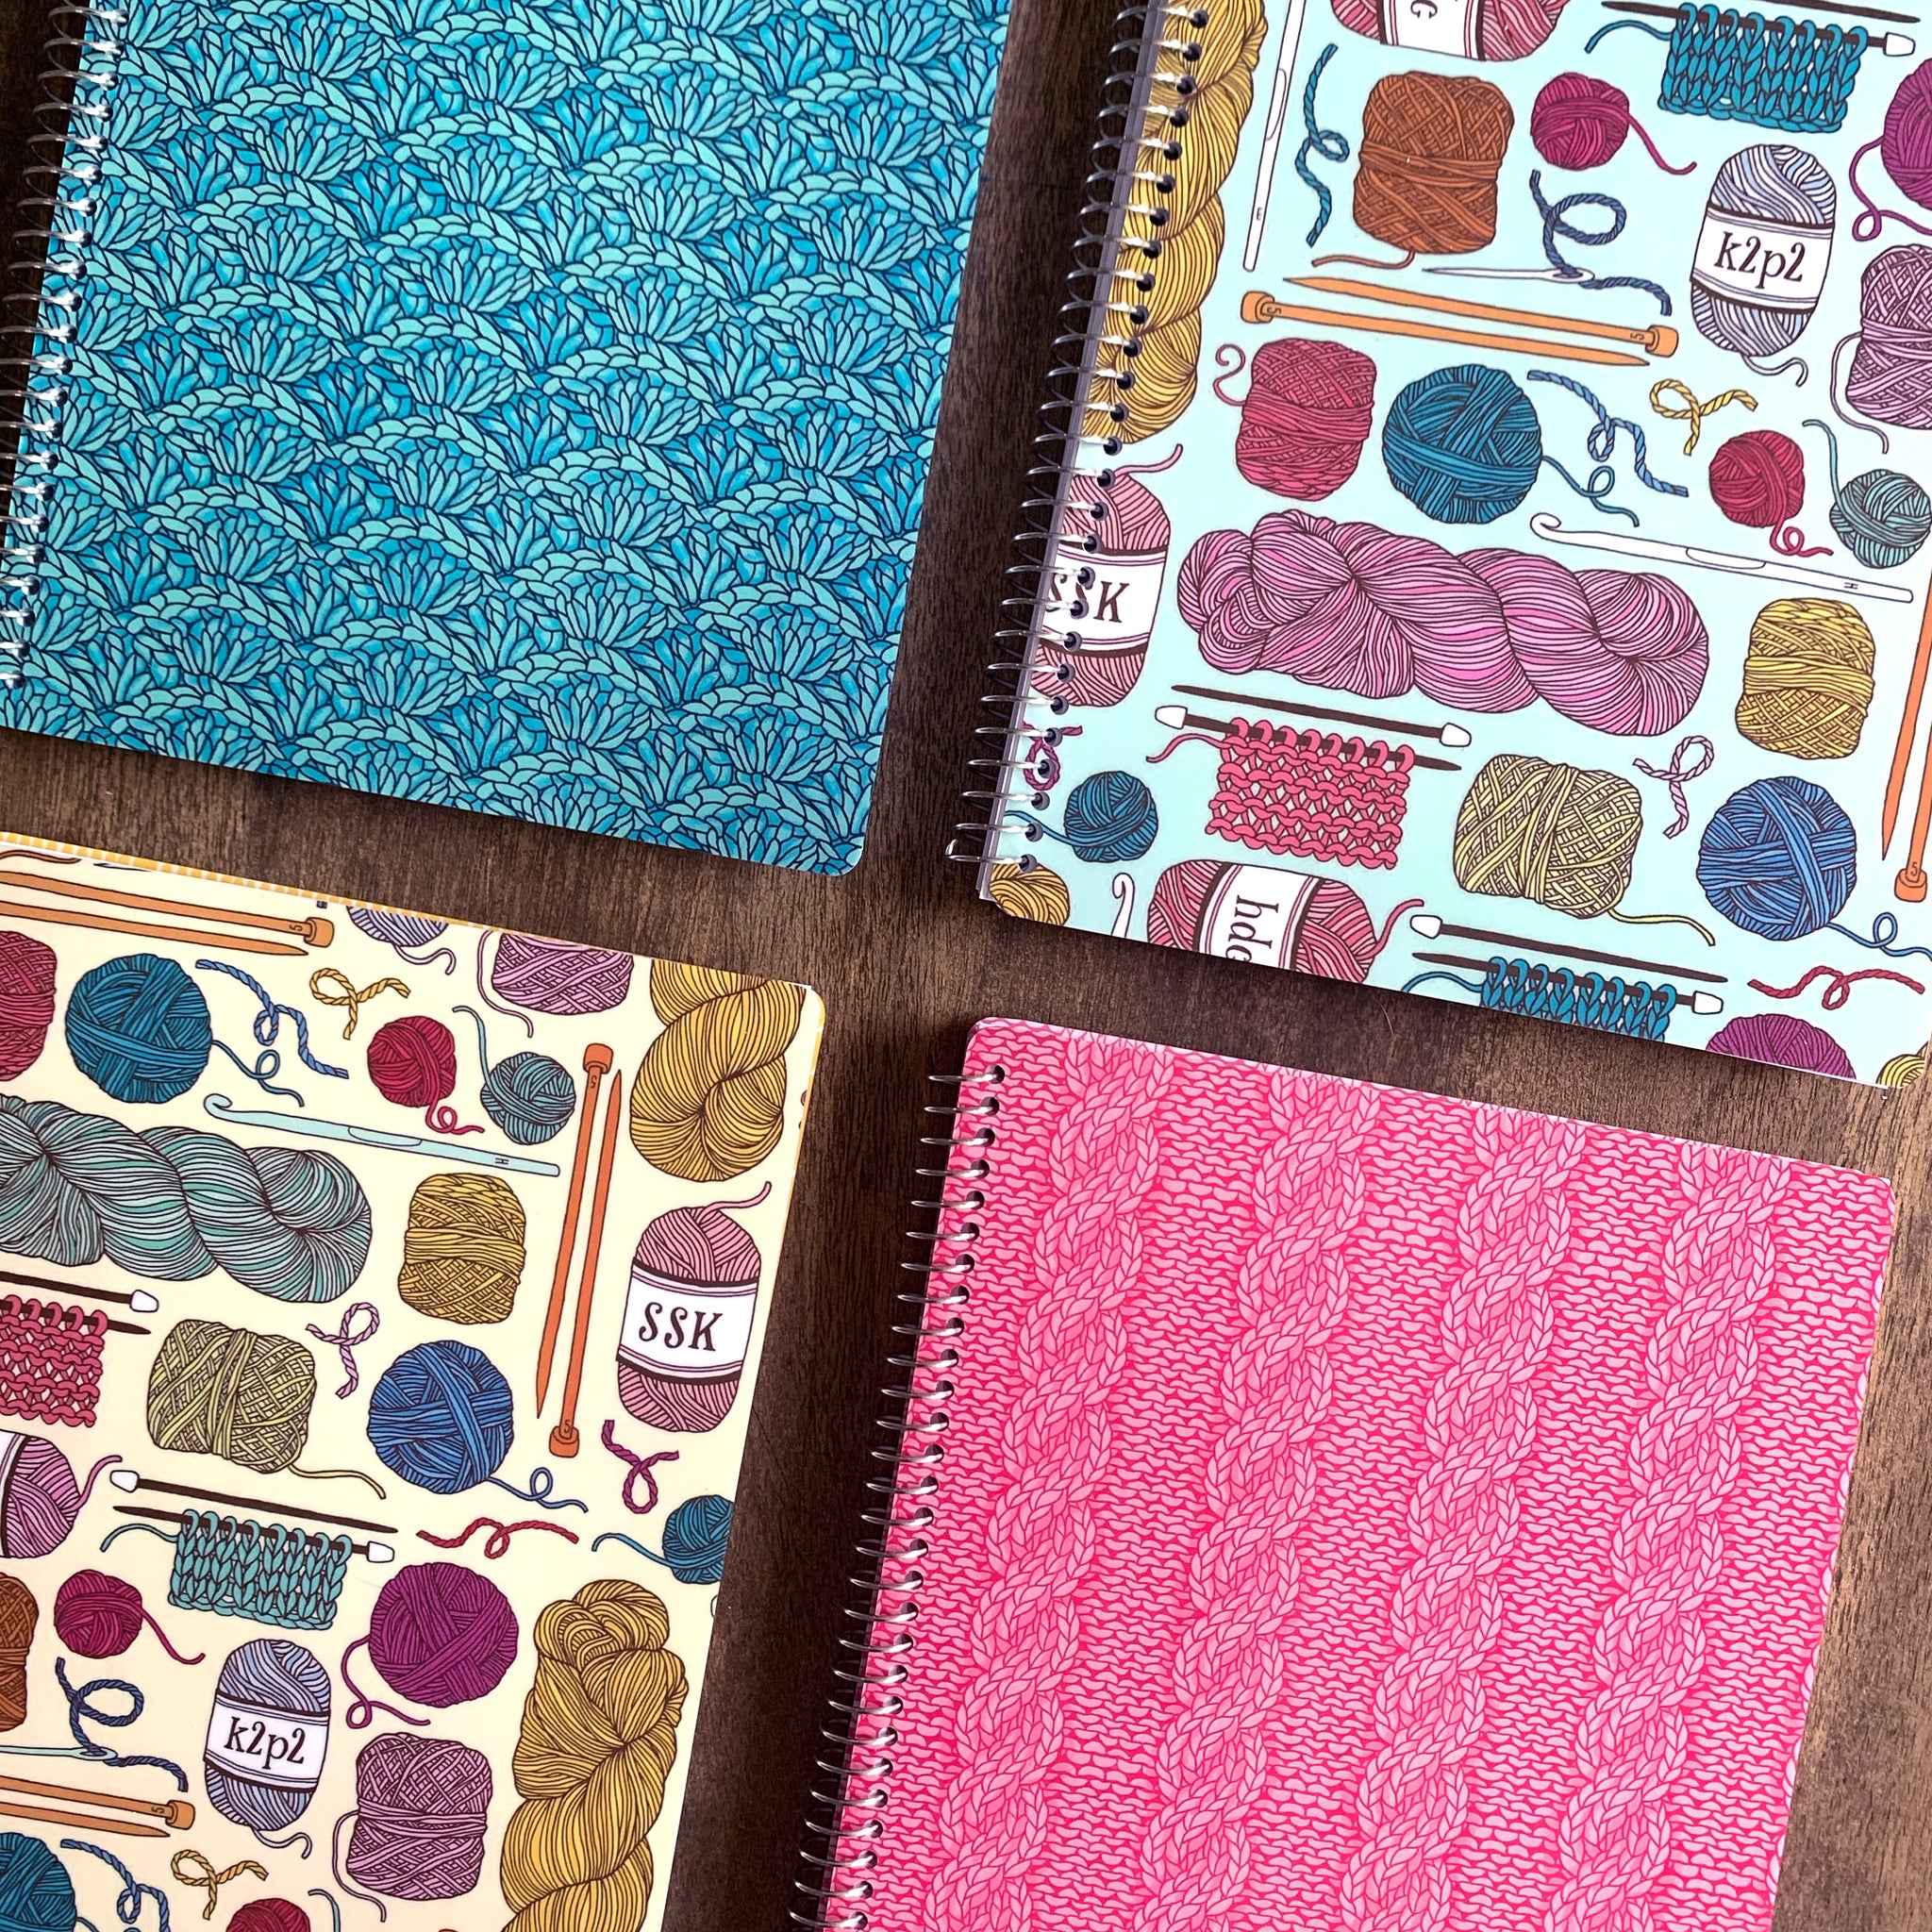 Yarny Things Notebook, Crochet Notebook, Crochet Journal, Crochet